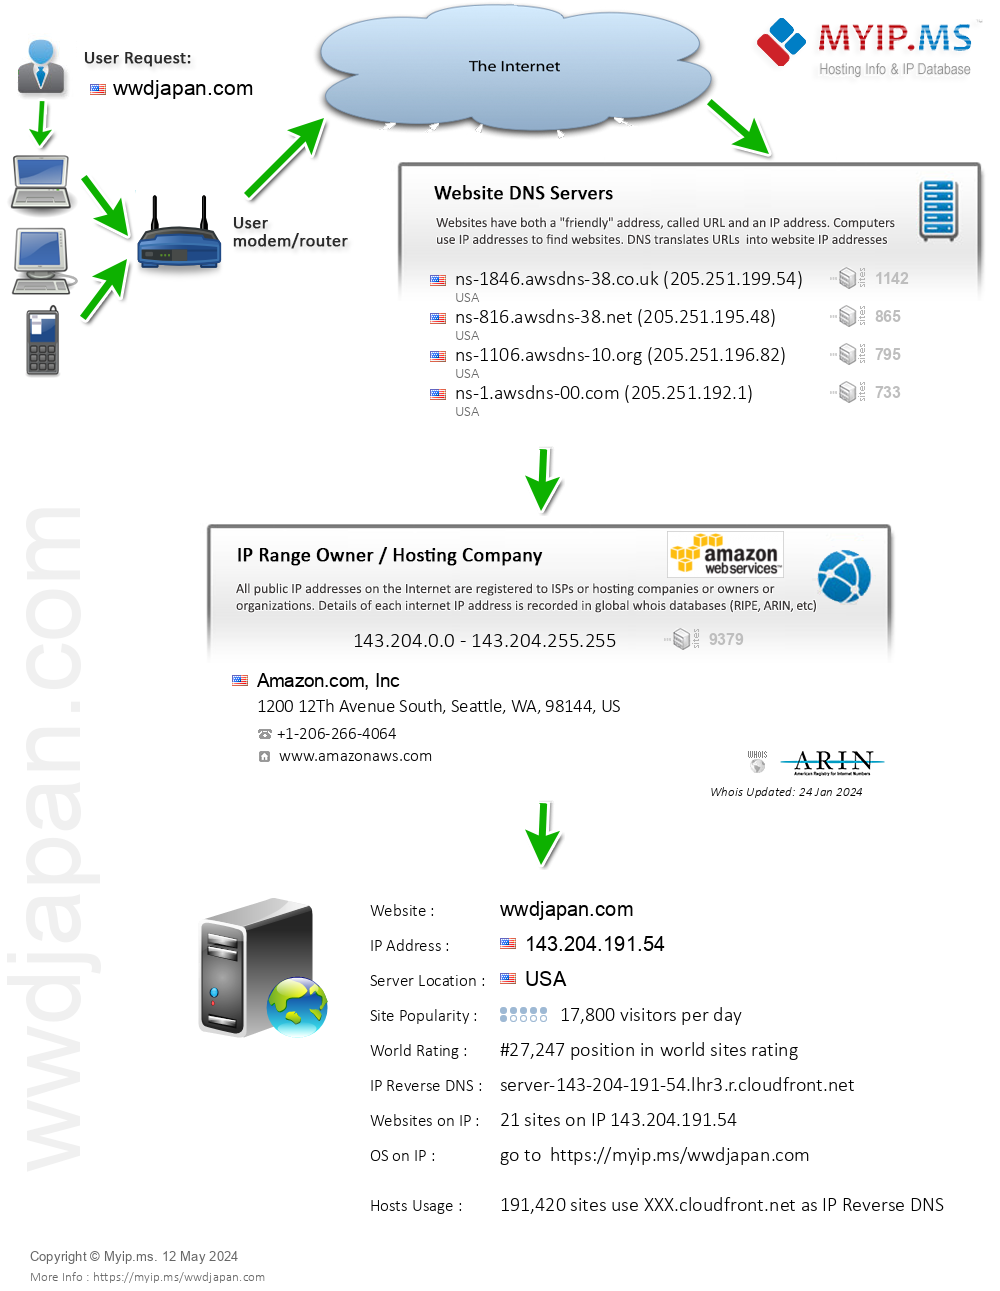 Wwdjapan.com - Website Hosting Visual IP Diagram